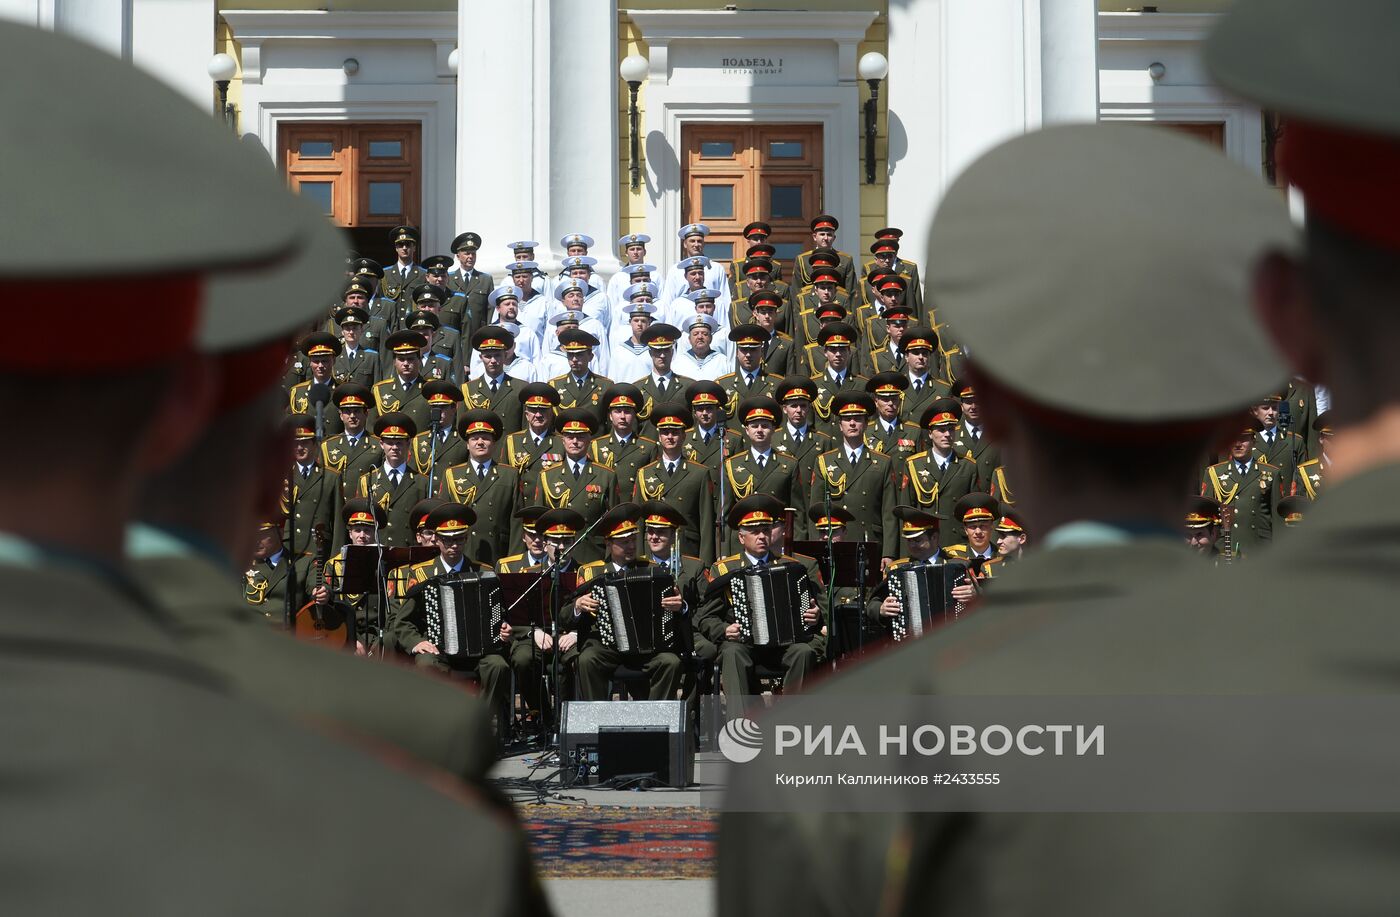 Выступление сводного хора ансамблей Вооруженных сил РФ на Суворовской площади